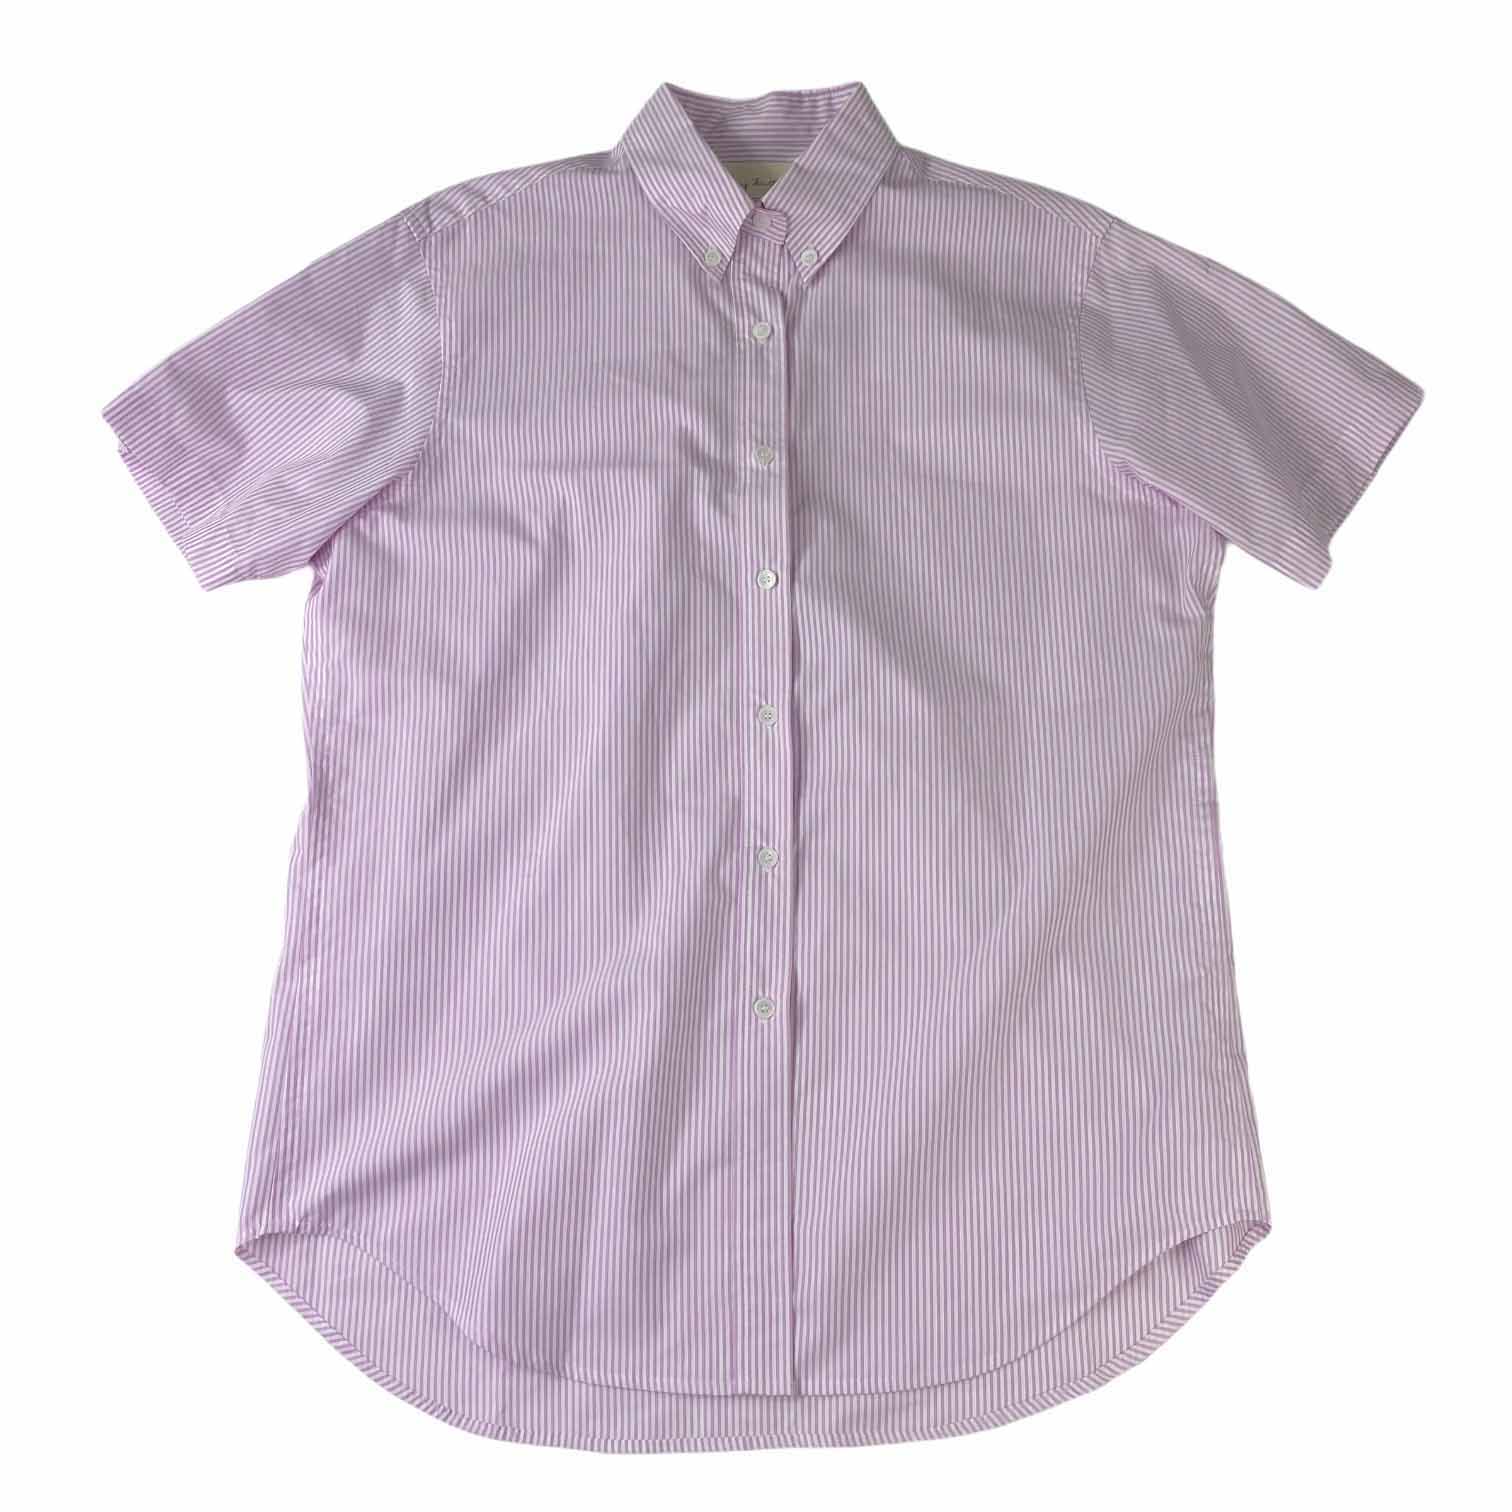 [Nothing Written] Stripe Short Pink Shirt - Size Free